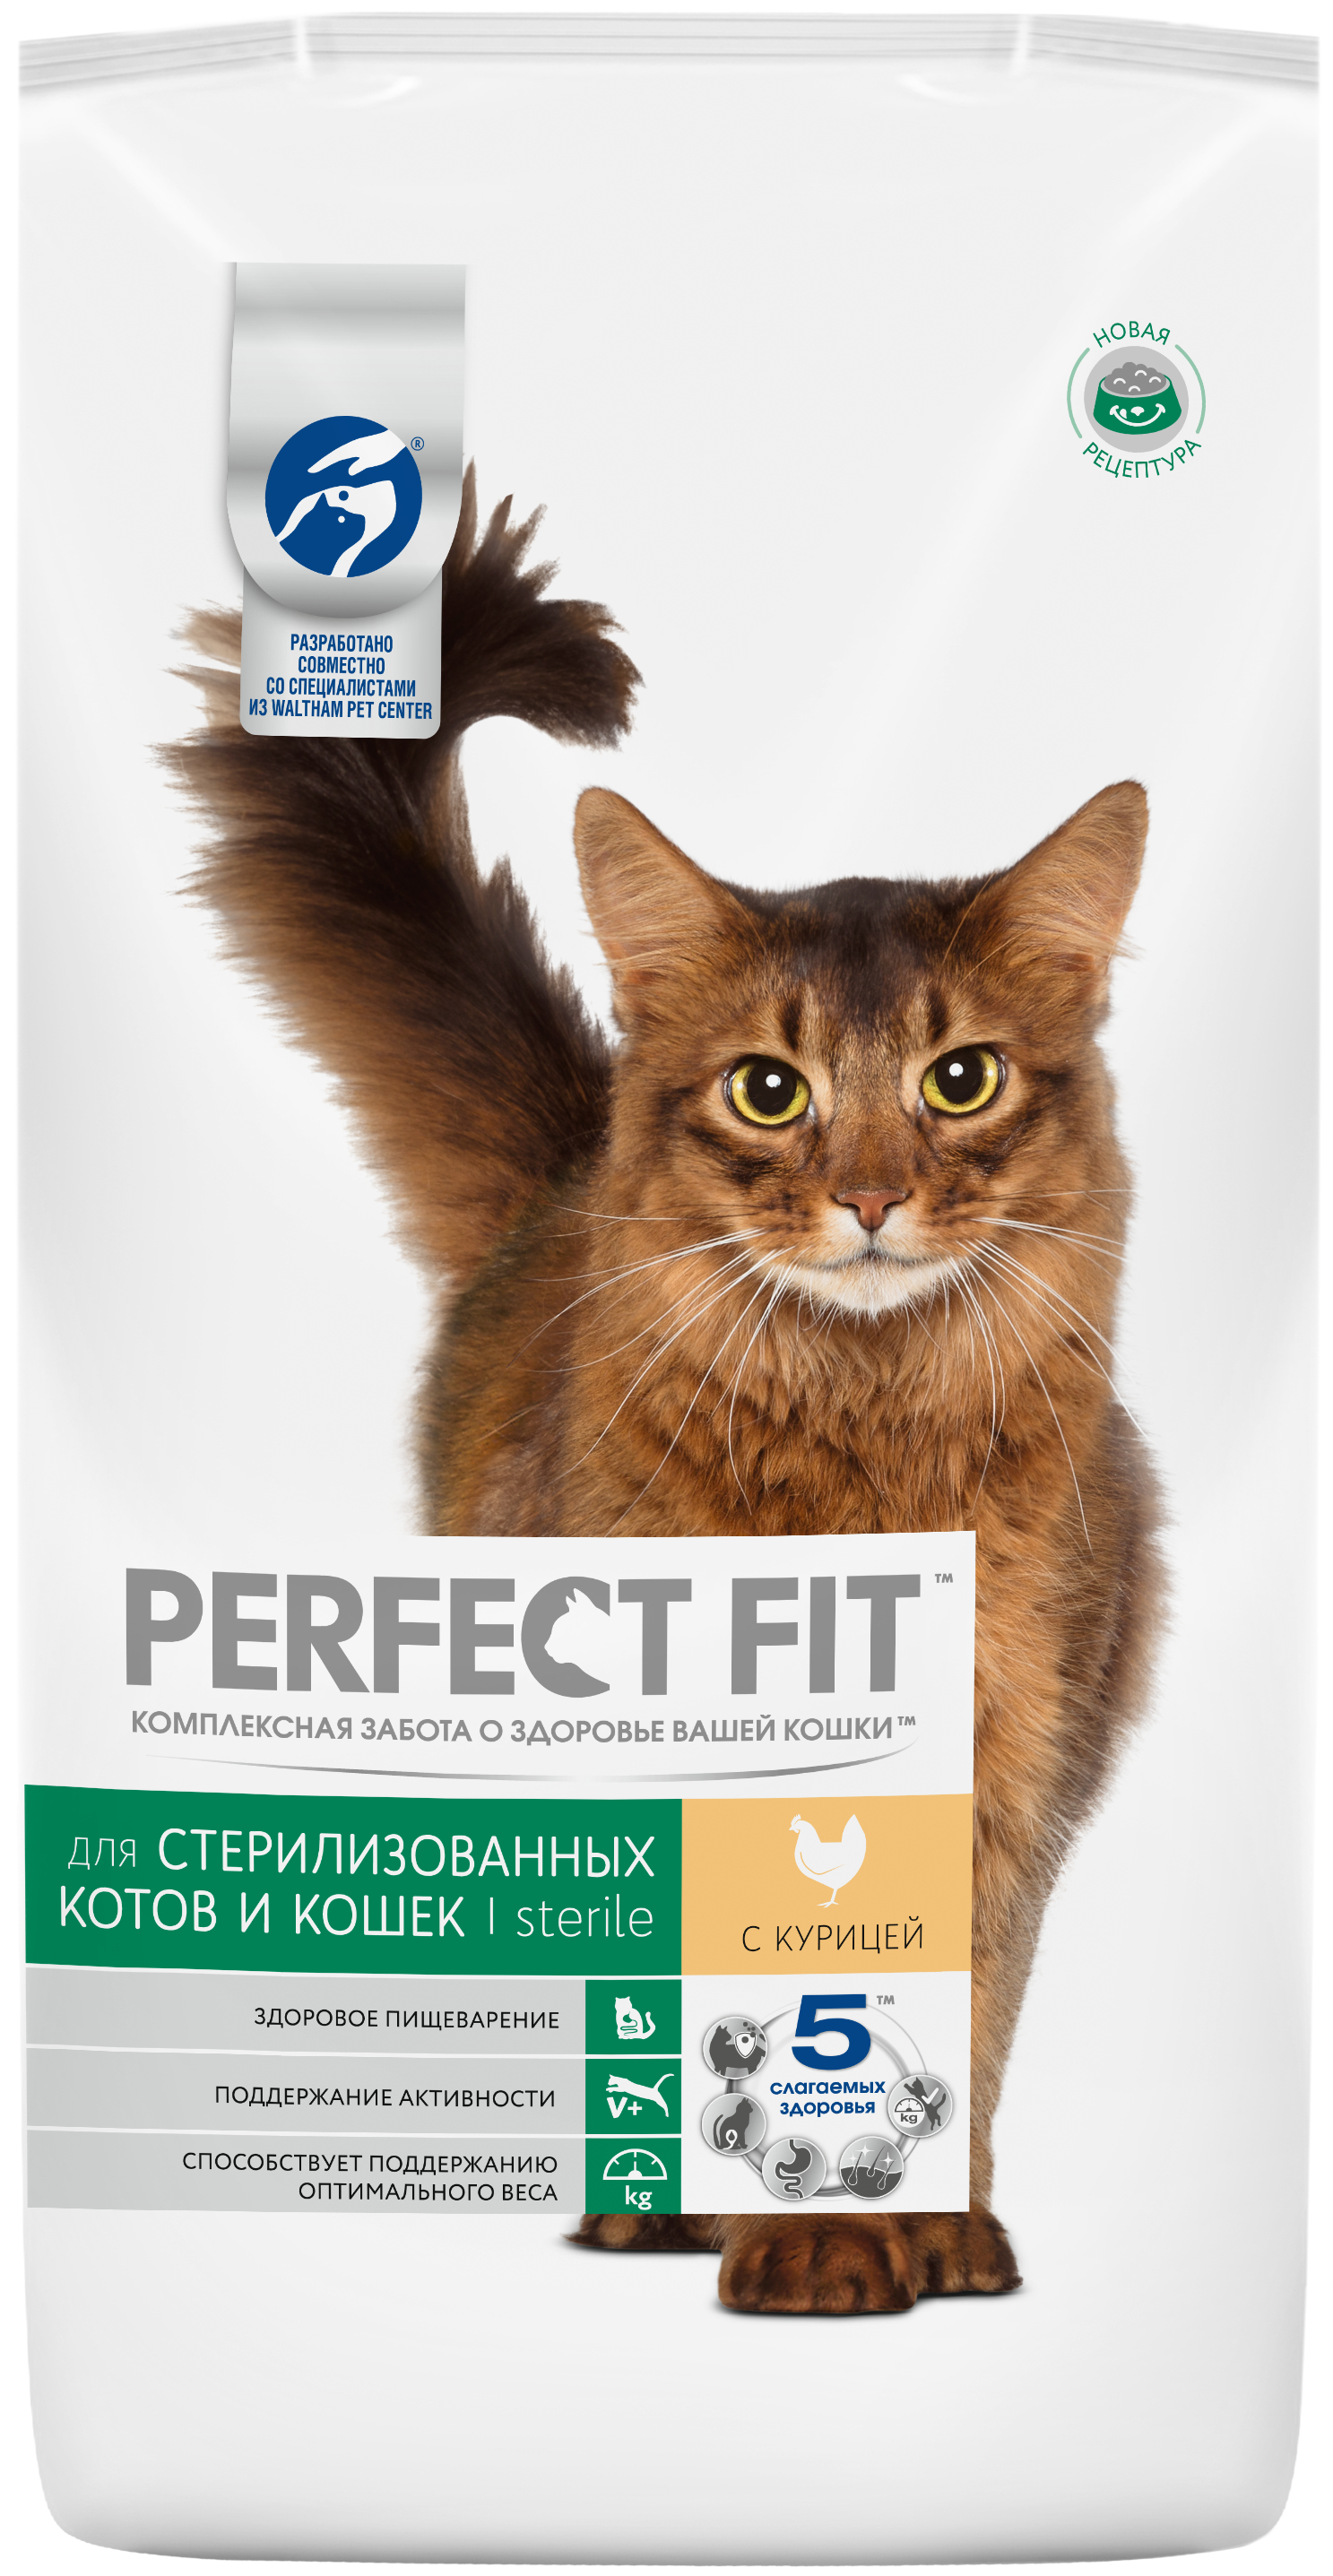 Как правильно кормить кота из шприца?